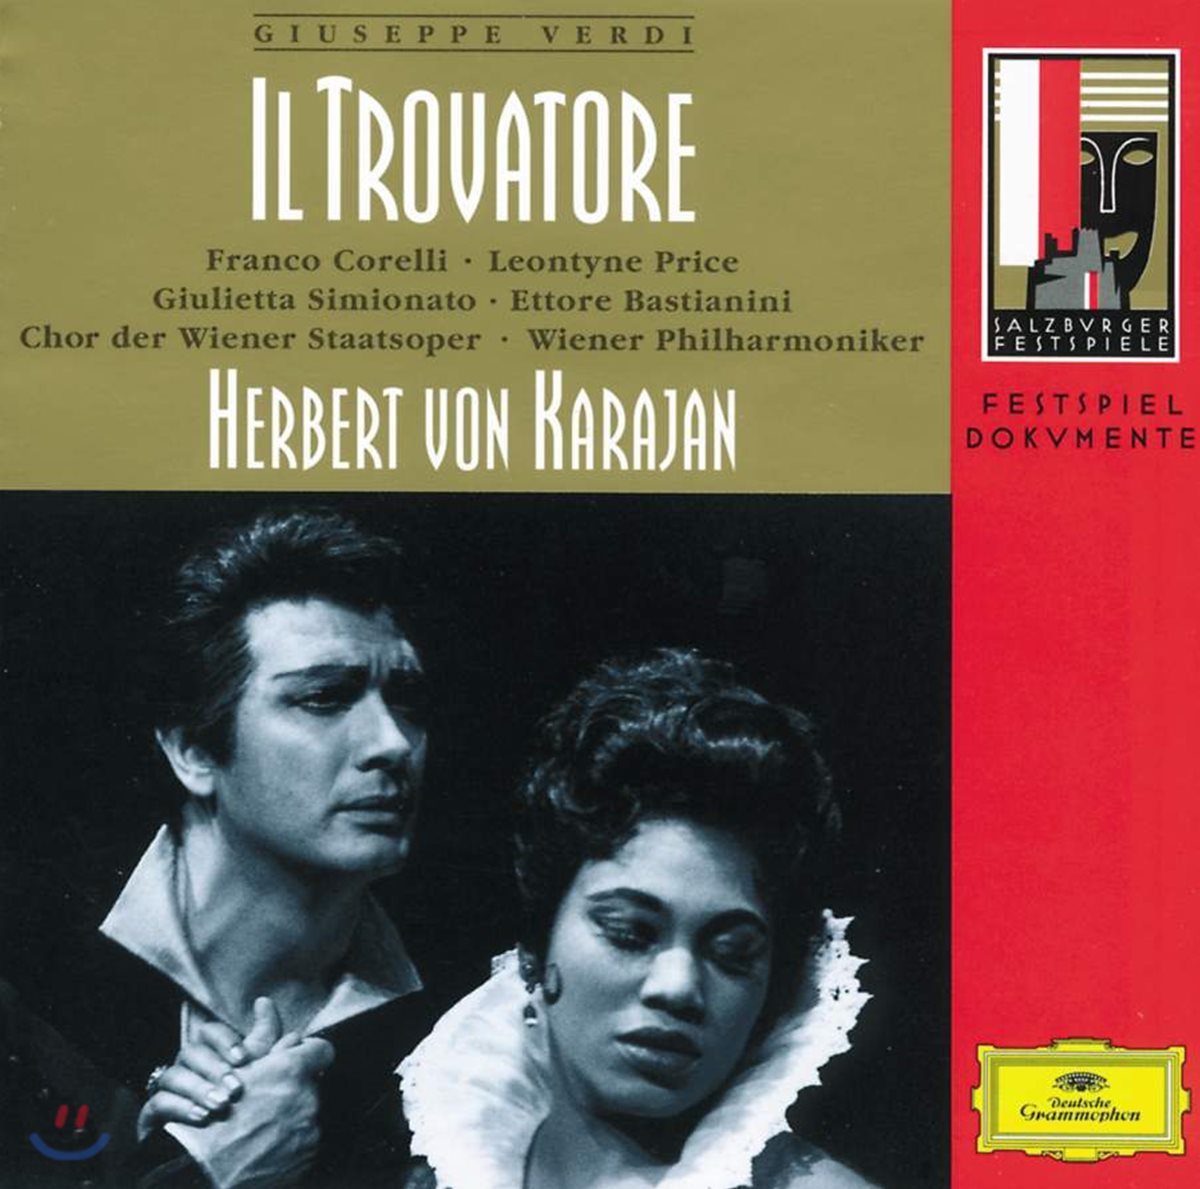 Nicola Zaccaria 베르디: 일 트로바토레 (Verdi: Il Trovatore)